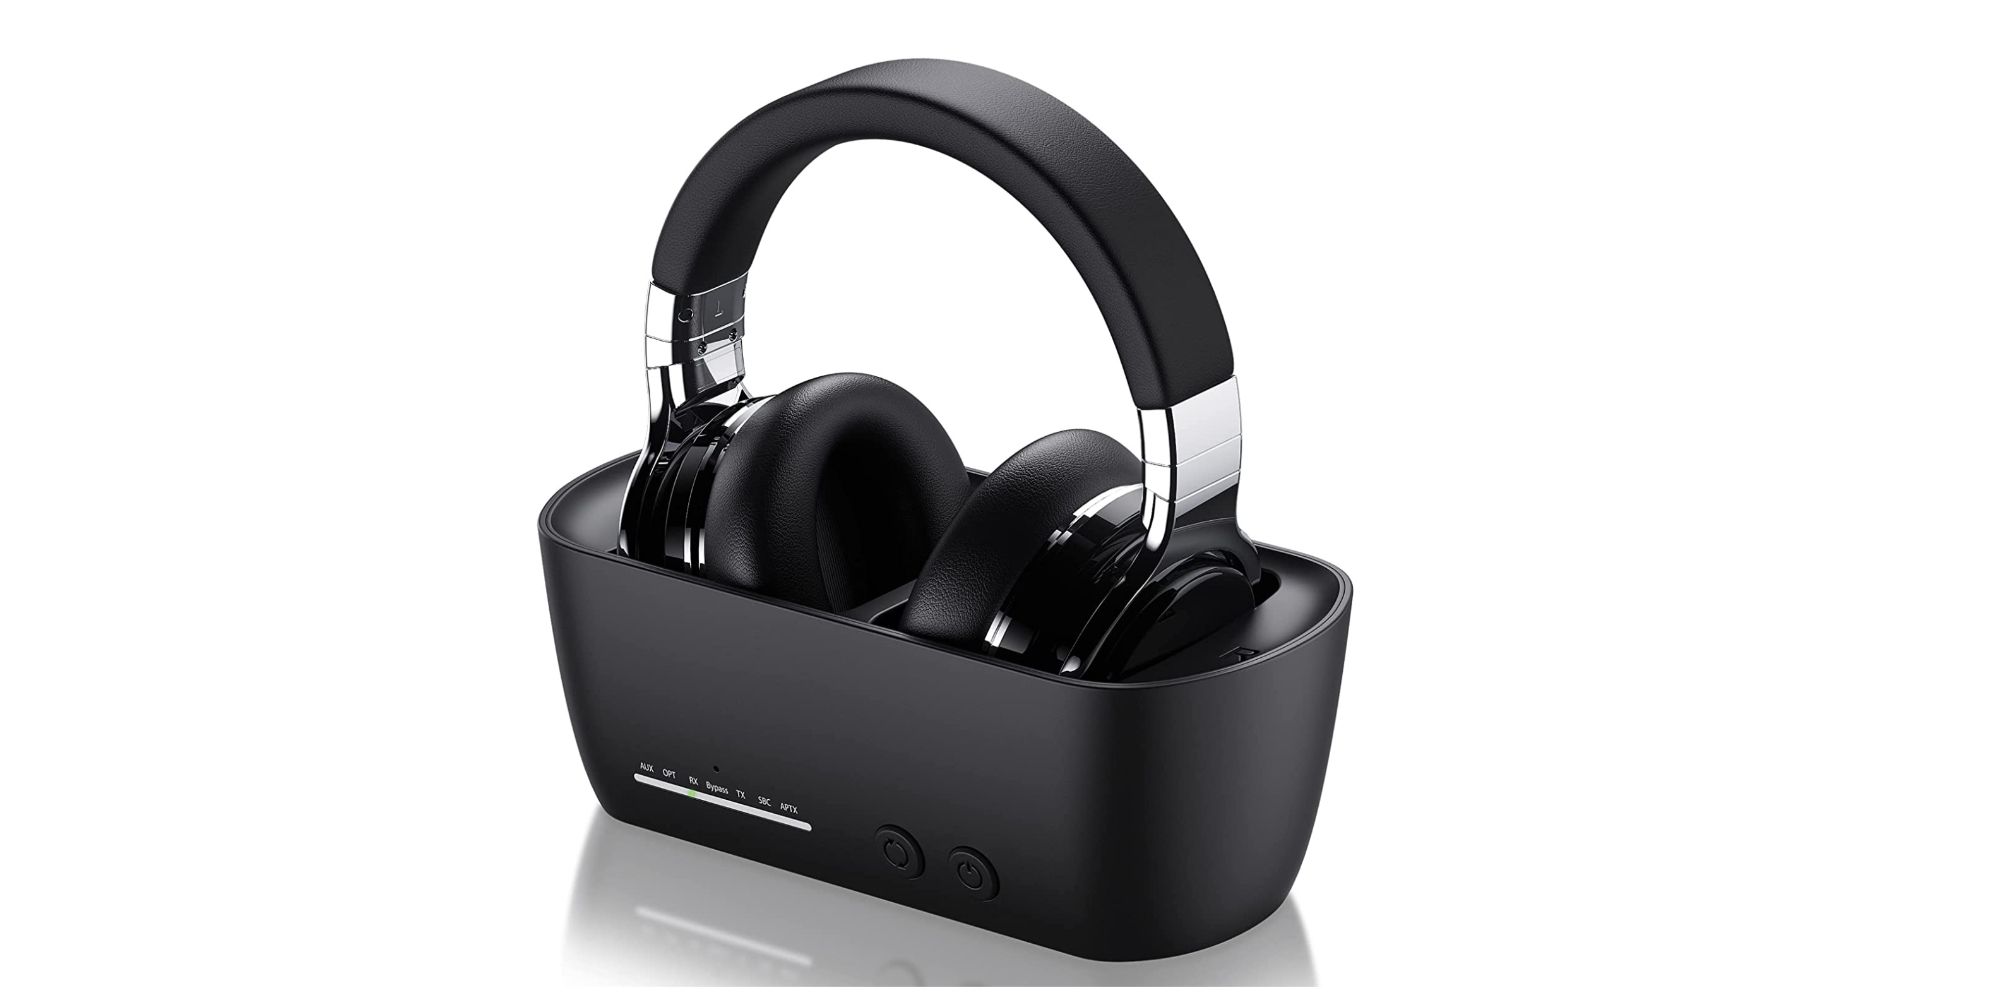 Vonaural Wireless Headphones w Bluetooth 5.0 Dock